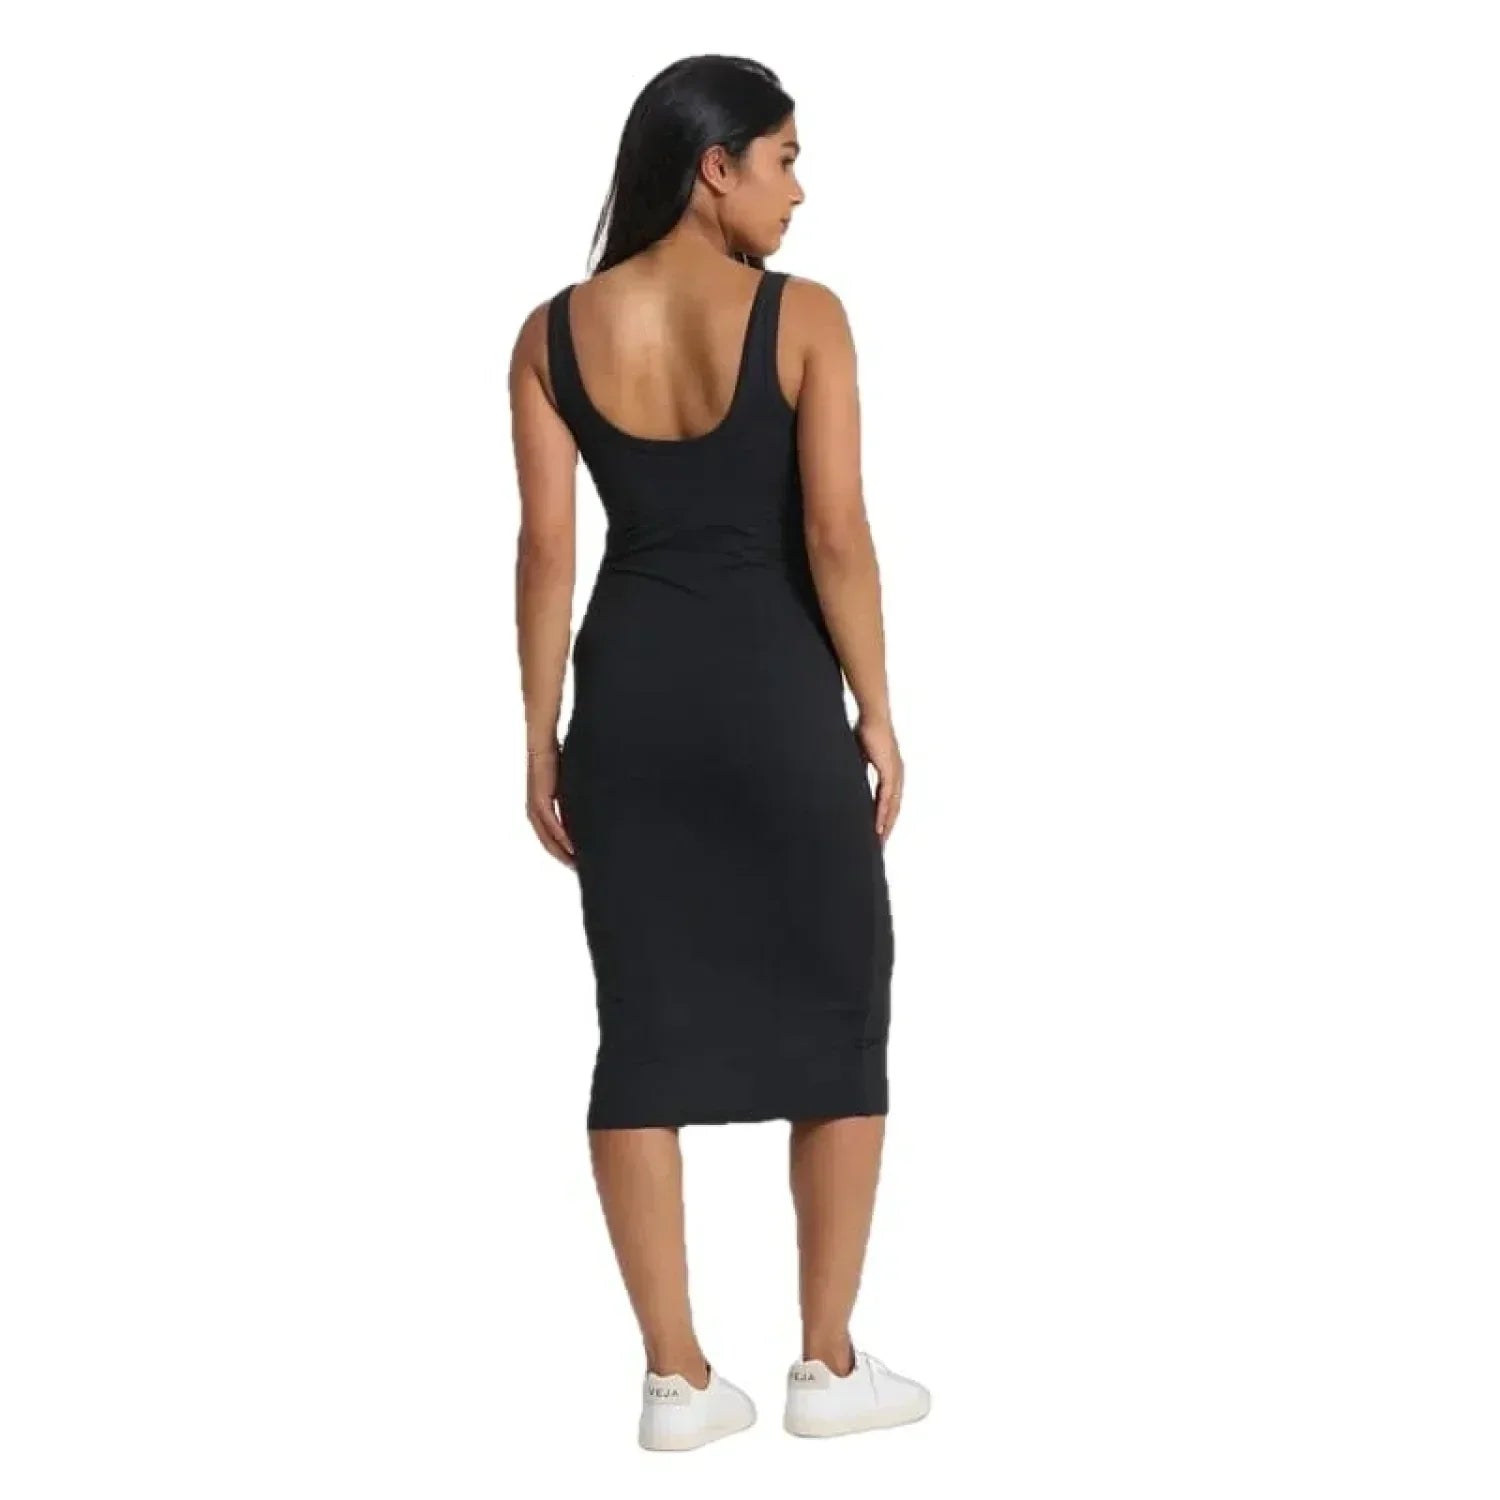 Vuori 02. WOMENS APPAREL - WOMENS DRESS|SKIRT - WOMENS DRESS ACTIVE Women's Halo Essential Dress HBK BLACK HEATHER